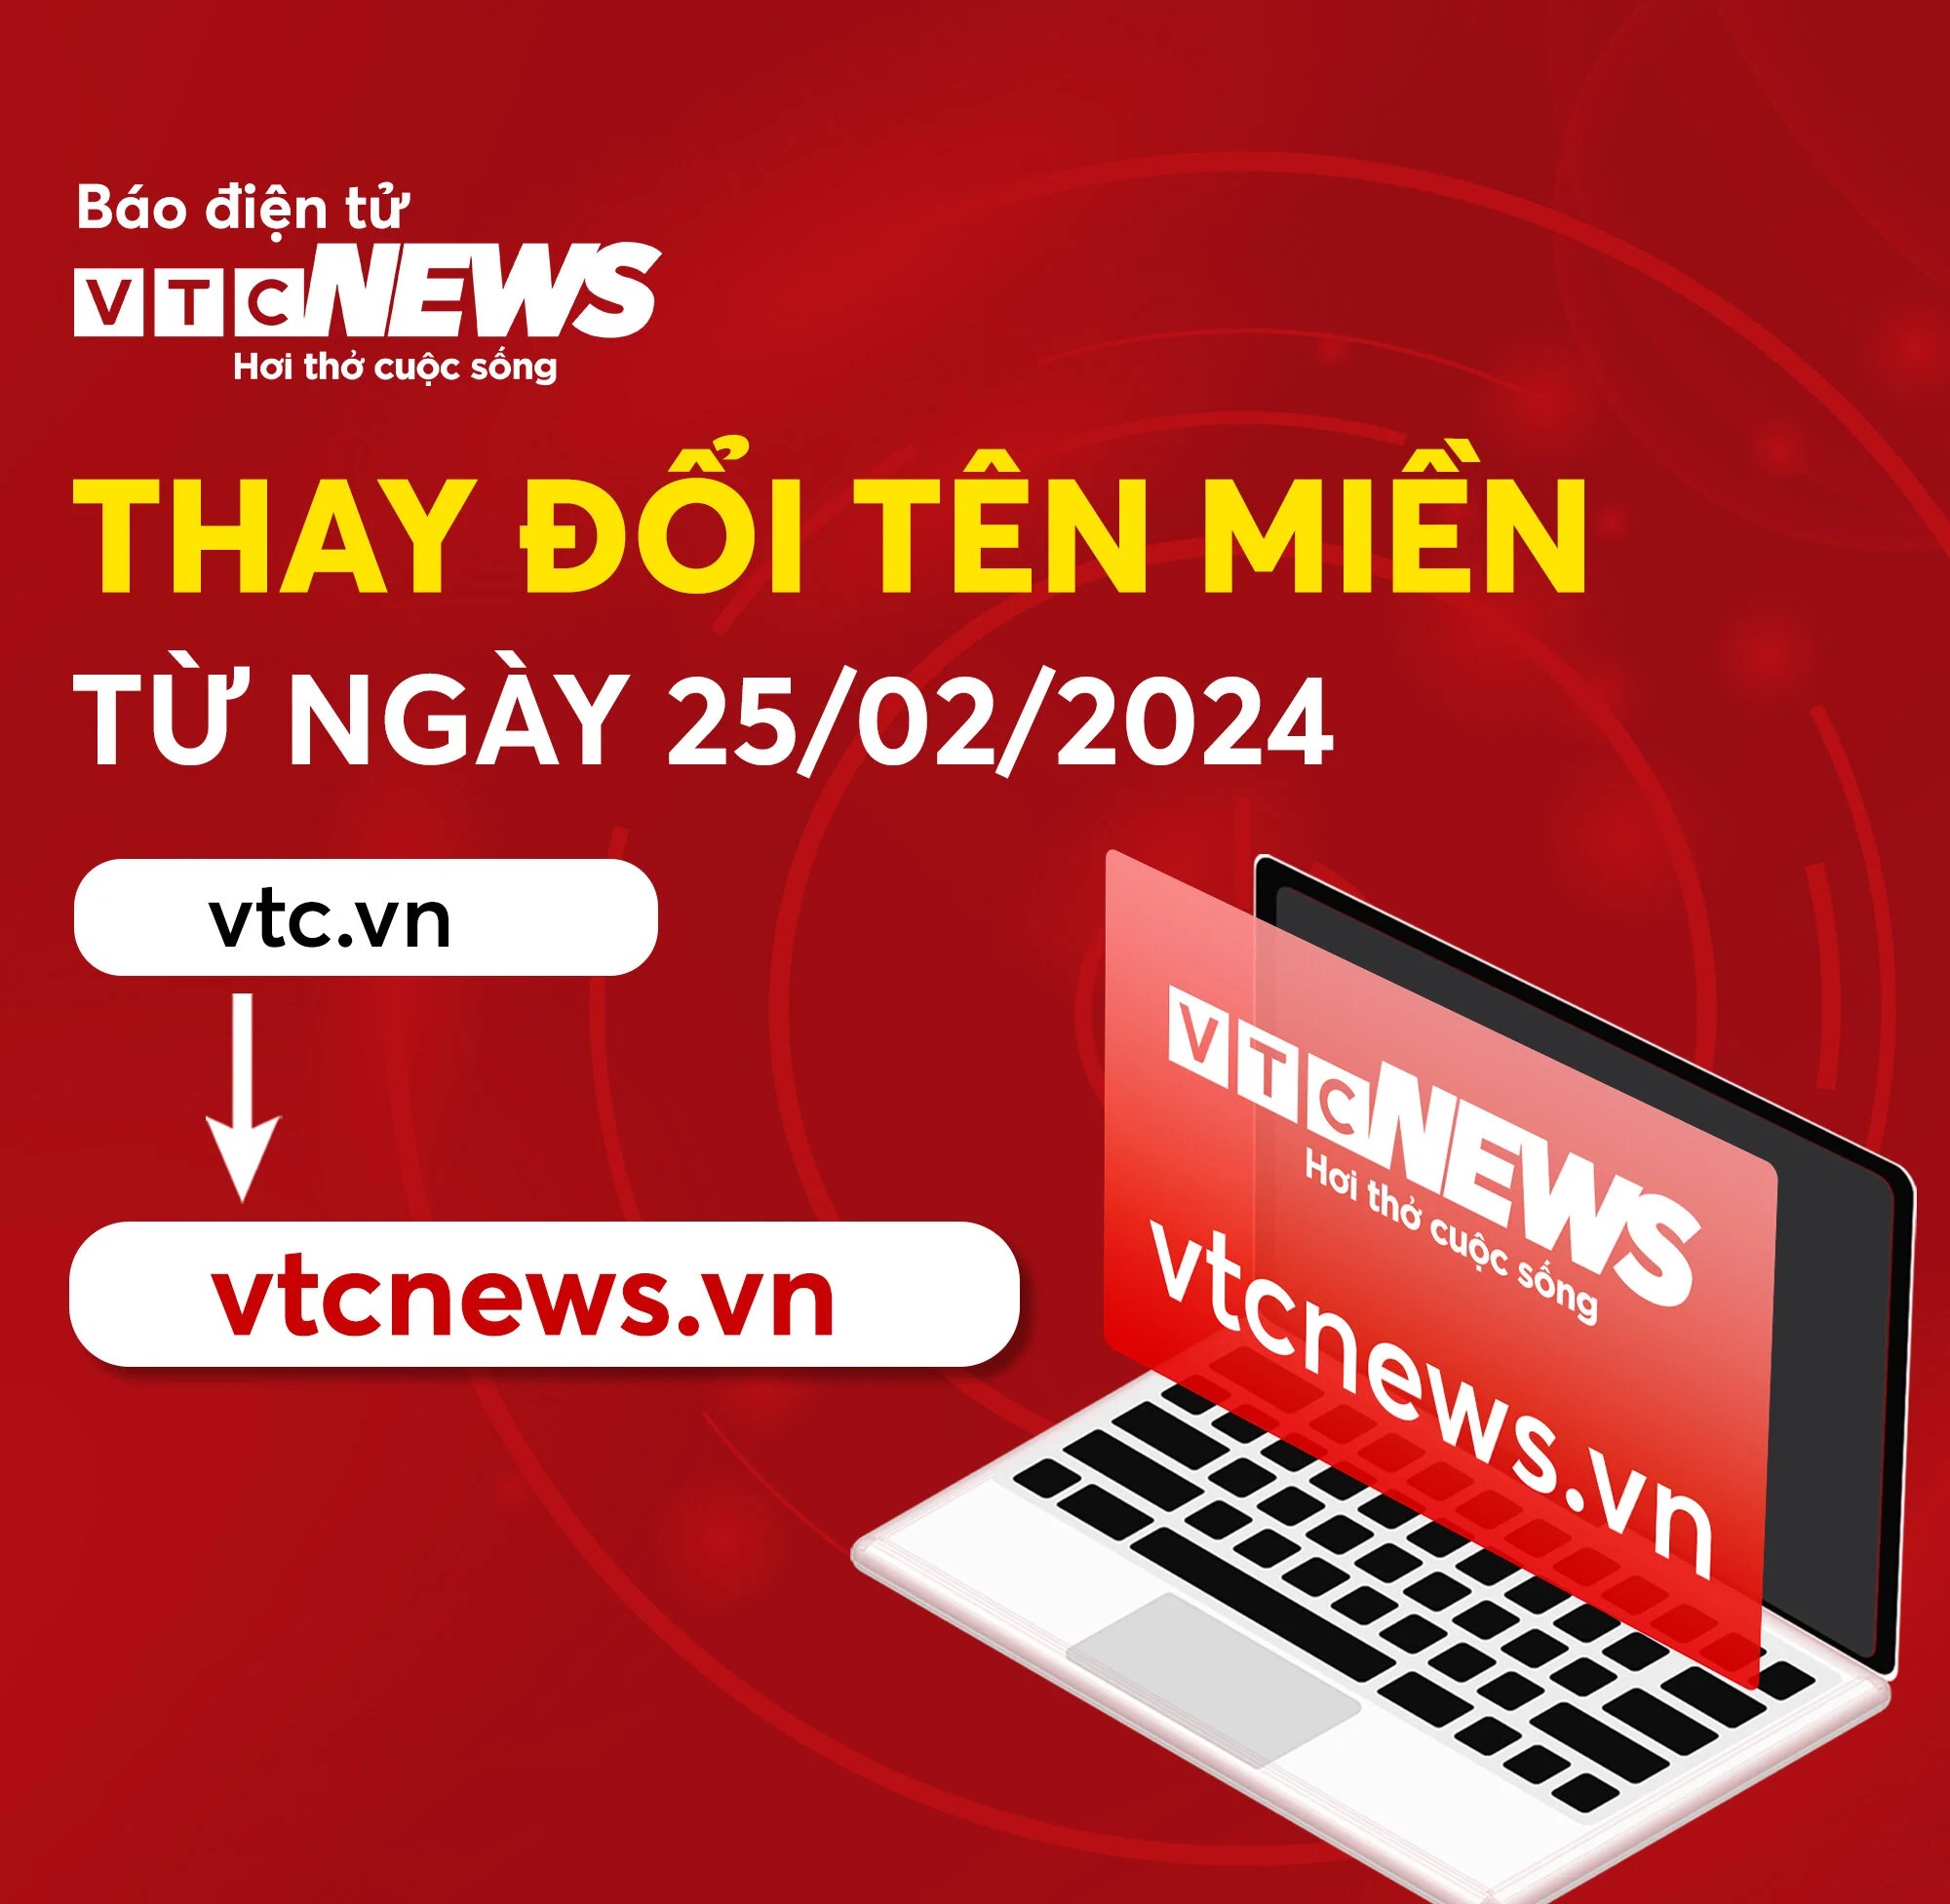 Báo điện tử VTC News thông báo đổi tên miền vtc.vn sang vtcnews.vn